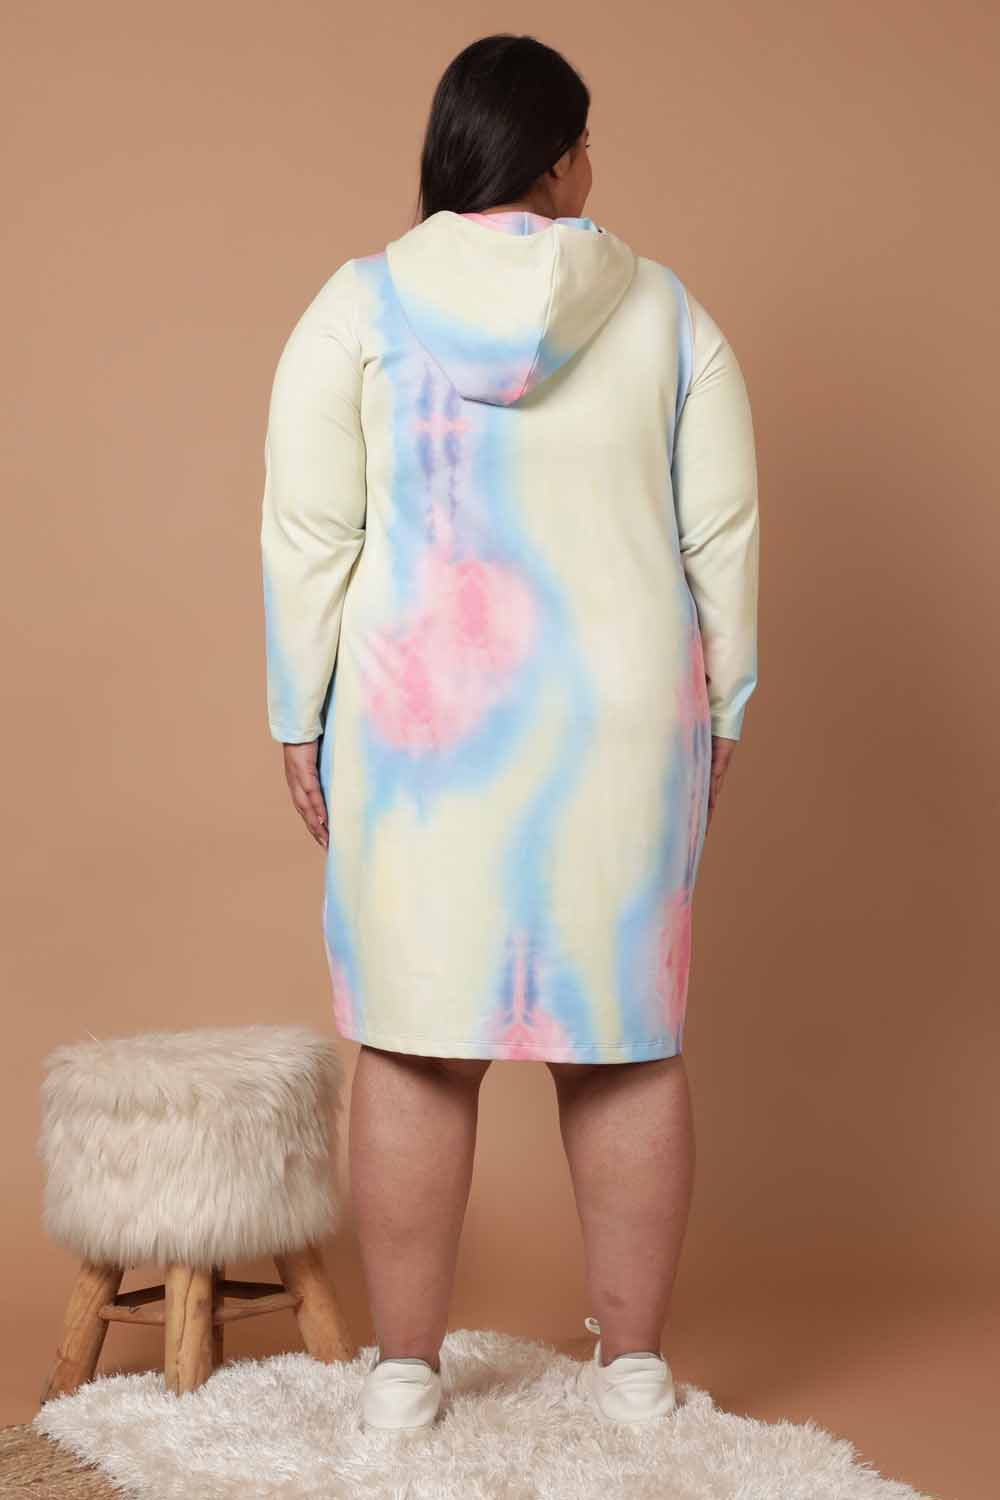 Plus Size Tie Dye Printed Sweatshirt Hoodie Winter Dress